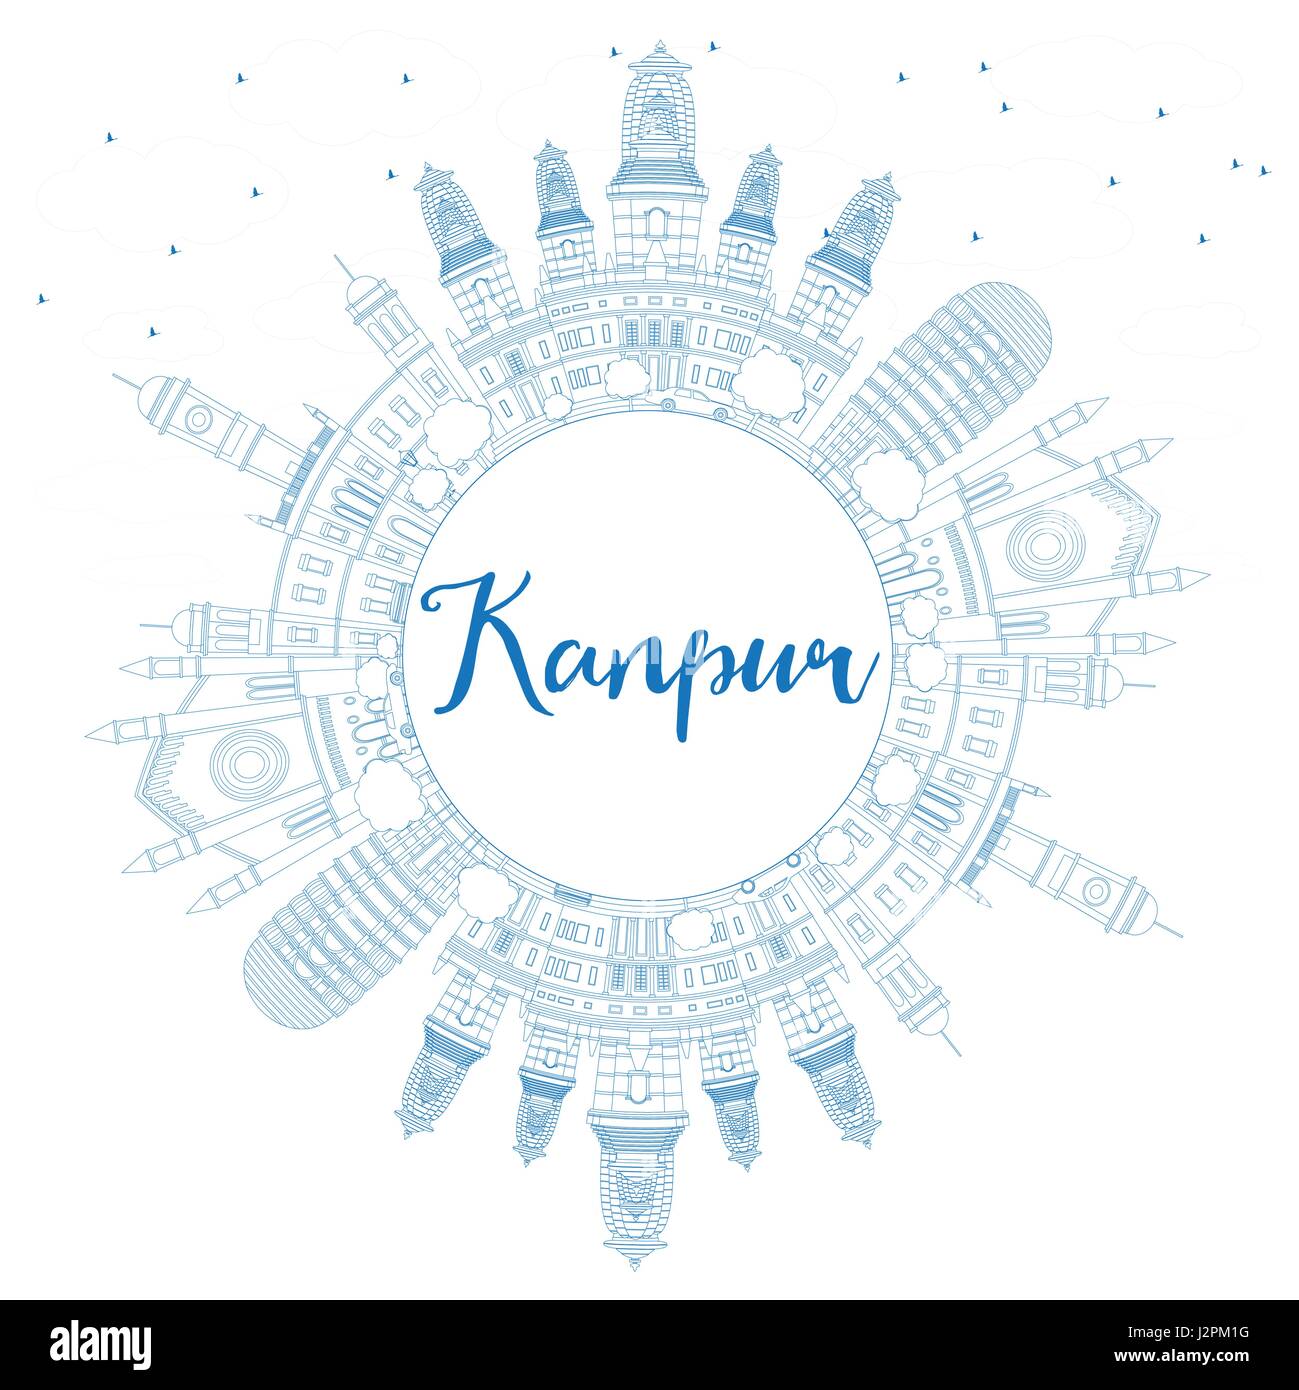 Umriss Kanpur mit blauen Gebäuden und textfreiraum Skyline. Vektor-Illustration. Geschäftsreisen und Tourismus-Konzept mit historischer Architektur. Stock Vektor